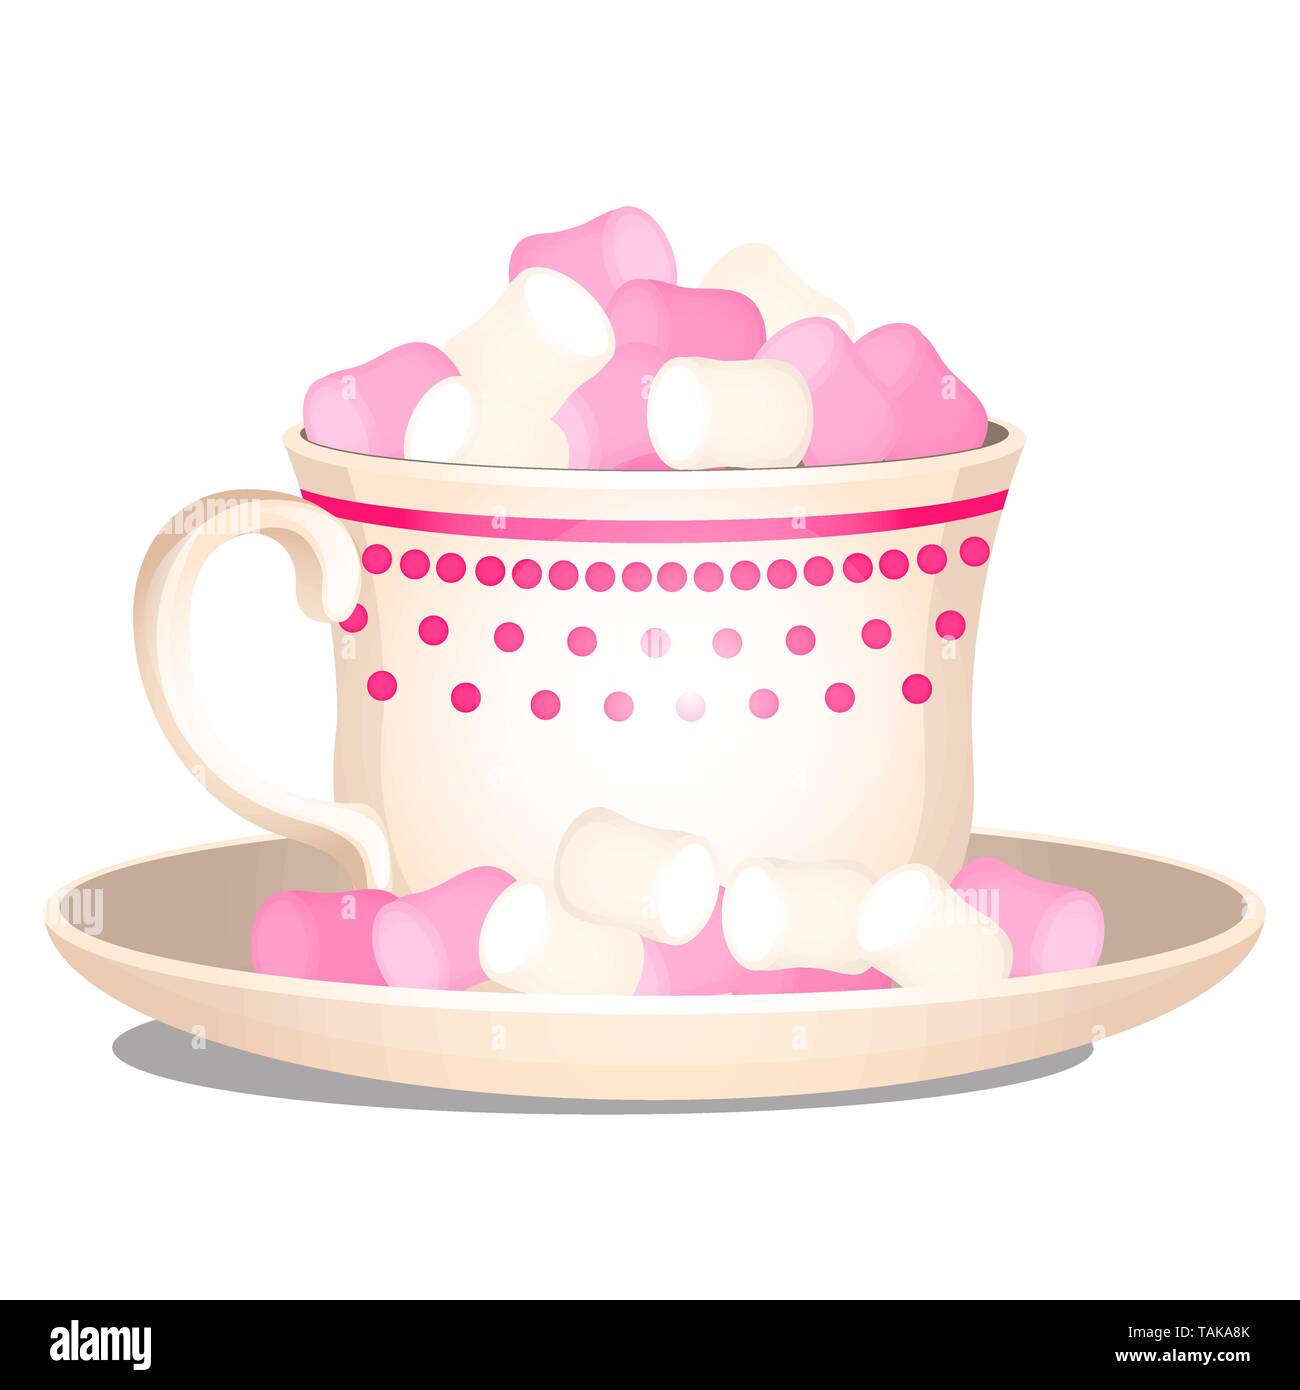 Porzellan Tasse mit einem süßen Nachtisch von Marshmallows auf weißem Hintergrund gefüllt. Vektor Cartoon Illustration close-up. Stock Vektor